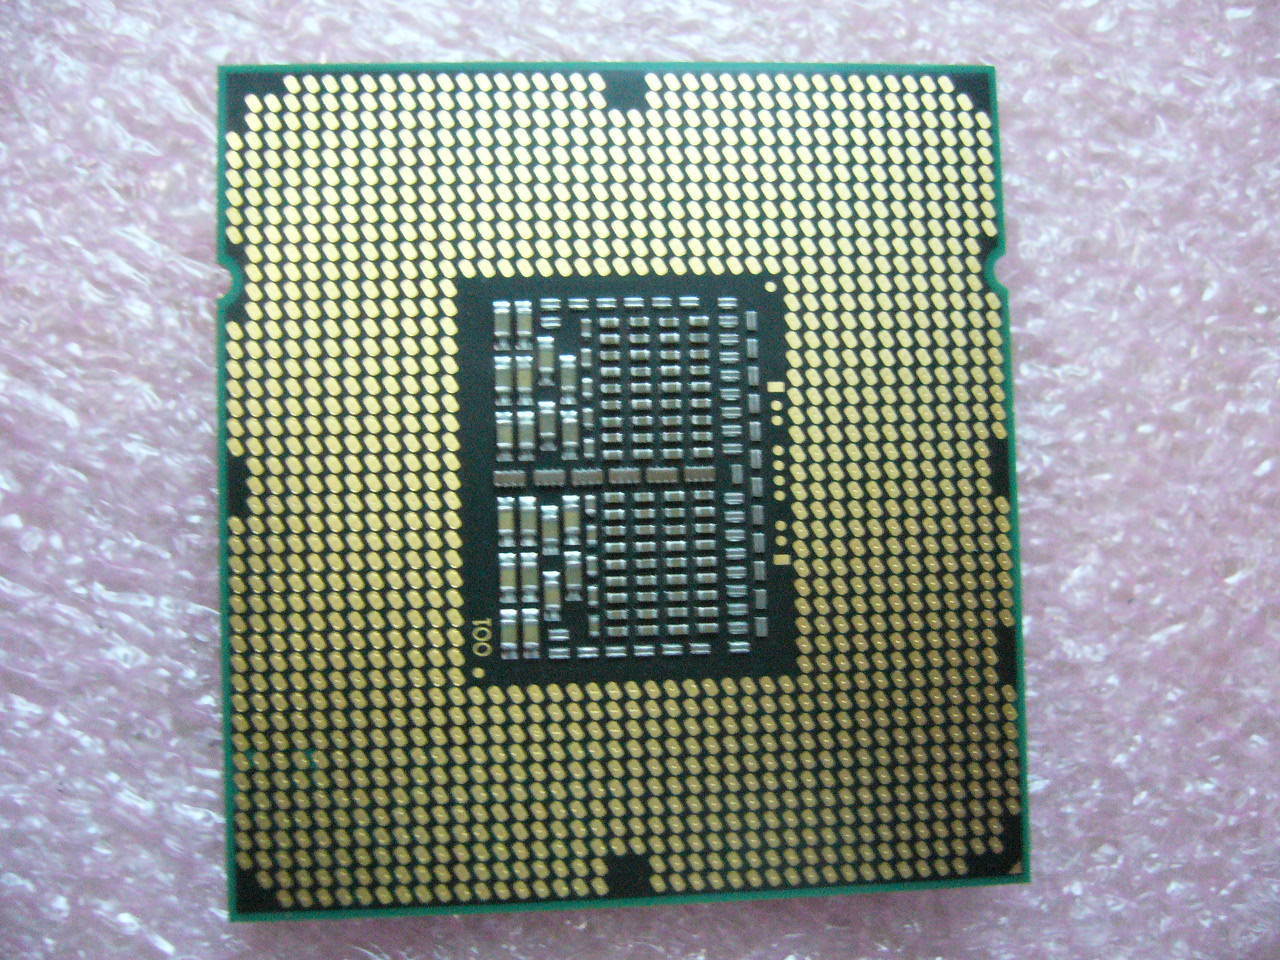 QTY 1x INTEL Quad-Cores CPU E5540 2.53GHZ/8MB 5.86GT/s QPI LGA1366 SLBF6 - zum Schließen ins Bild klicken